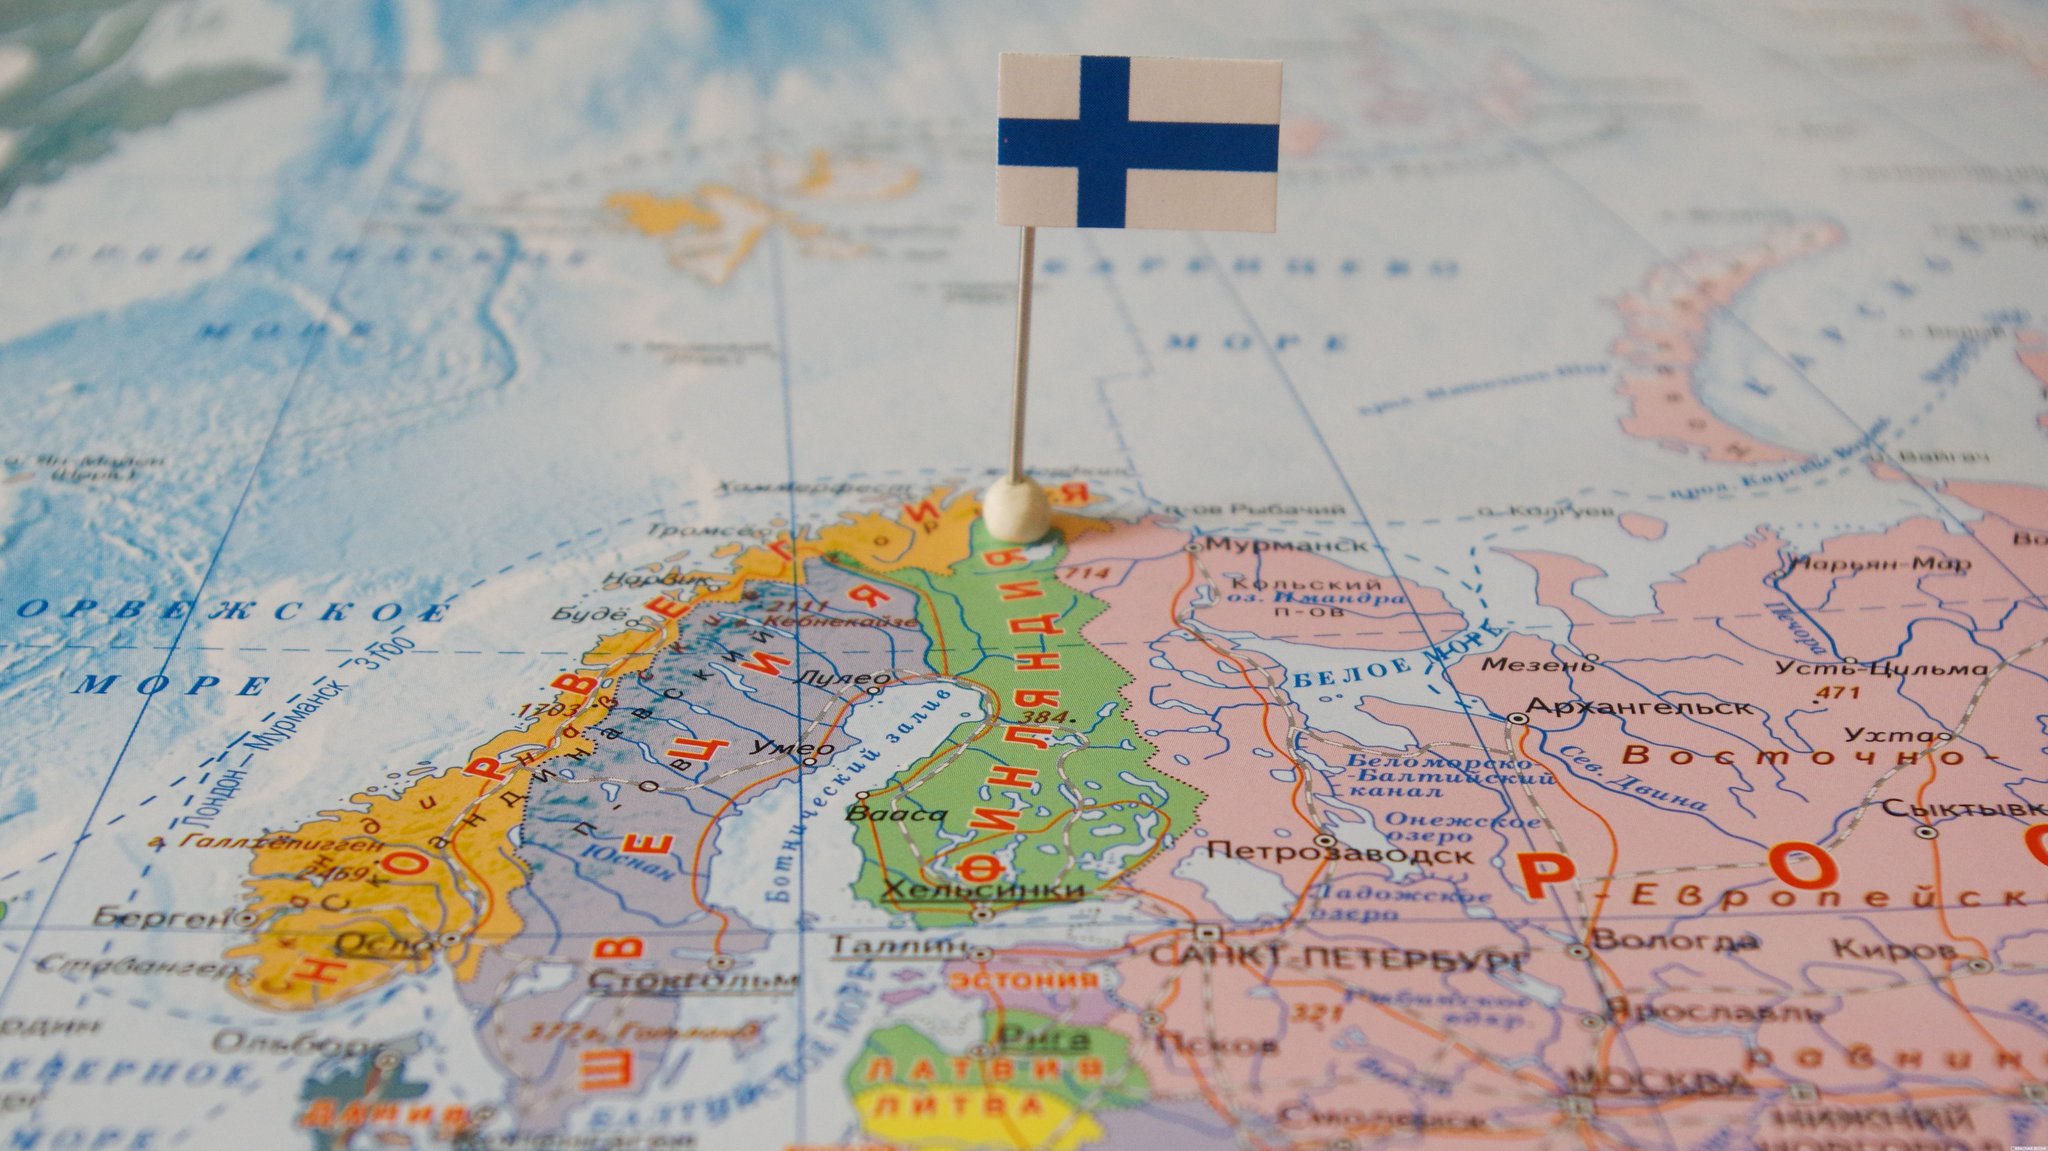 Финляндия с флагом на карте мира. 08.11.17